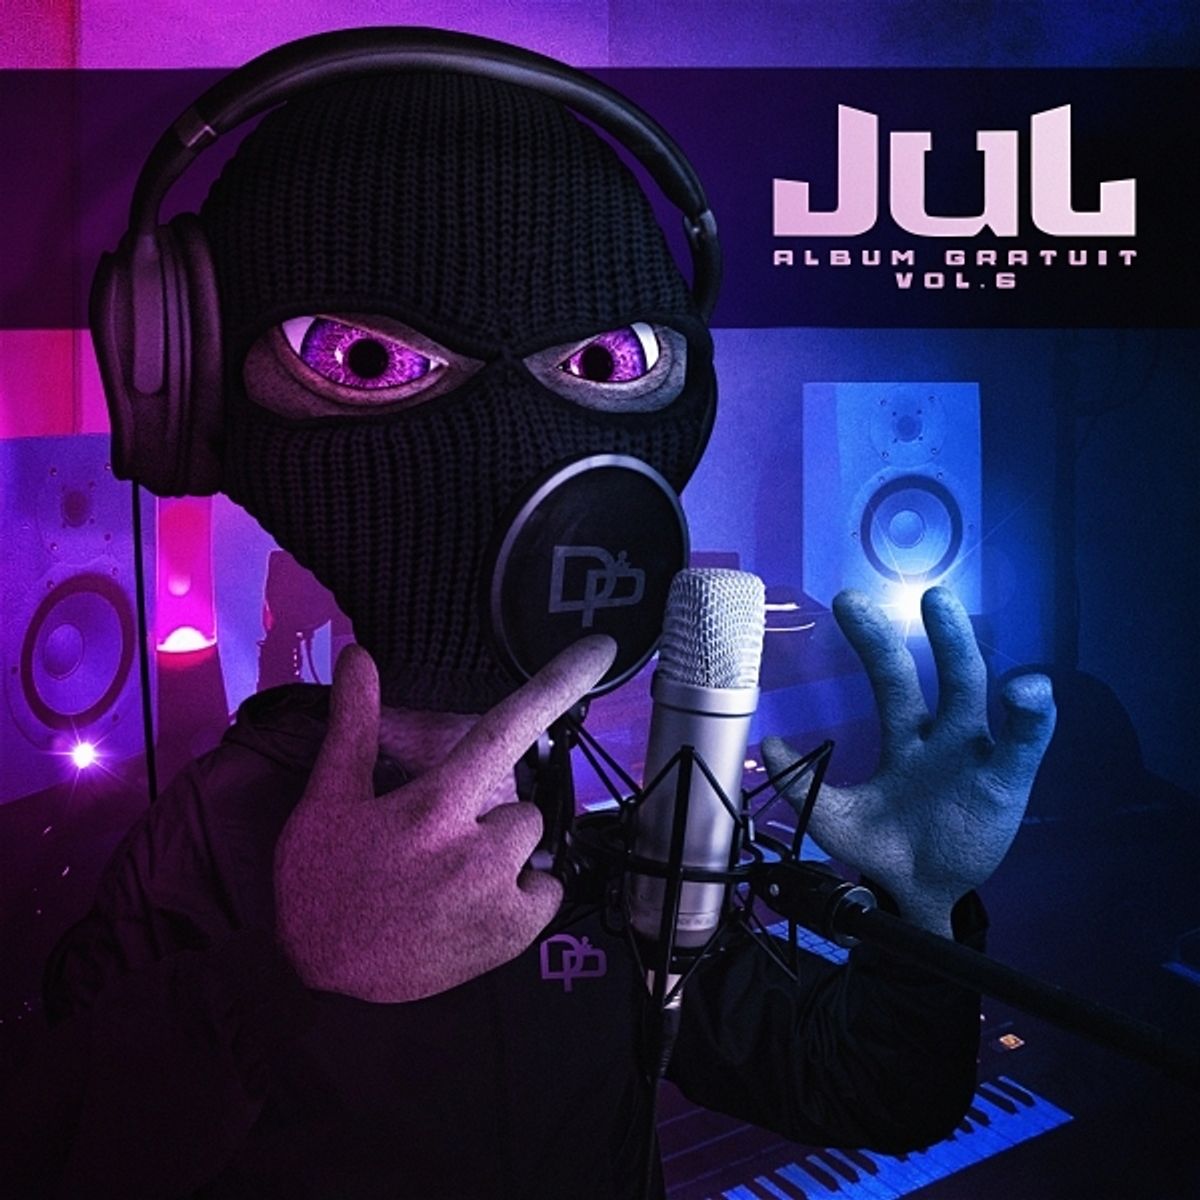  JUL Album gratuit  vol 6